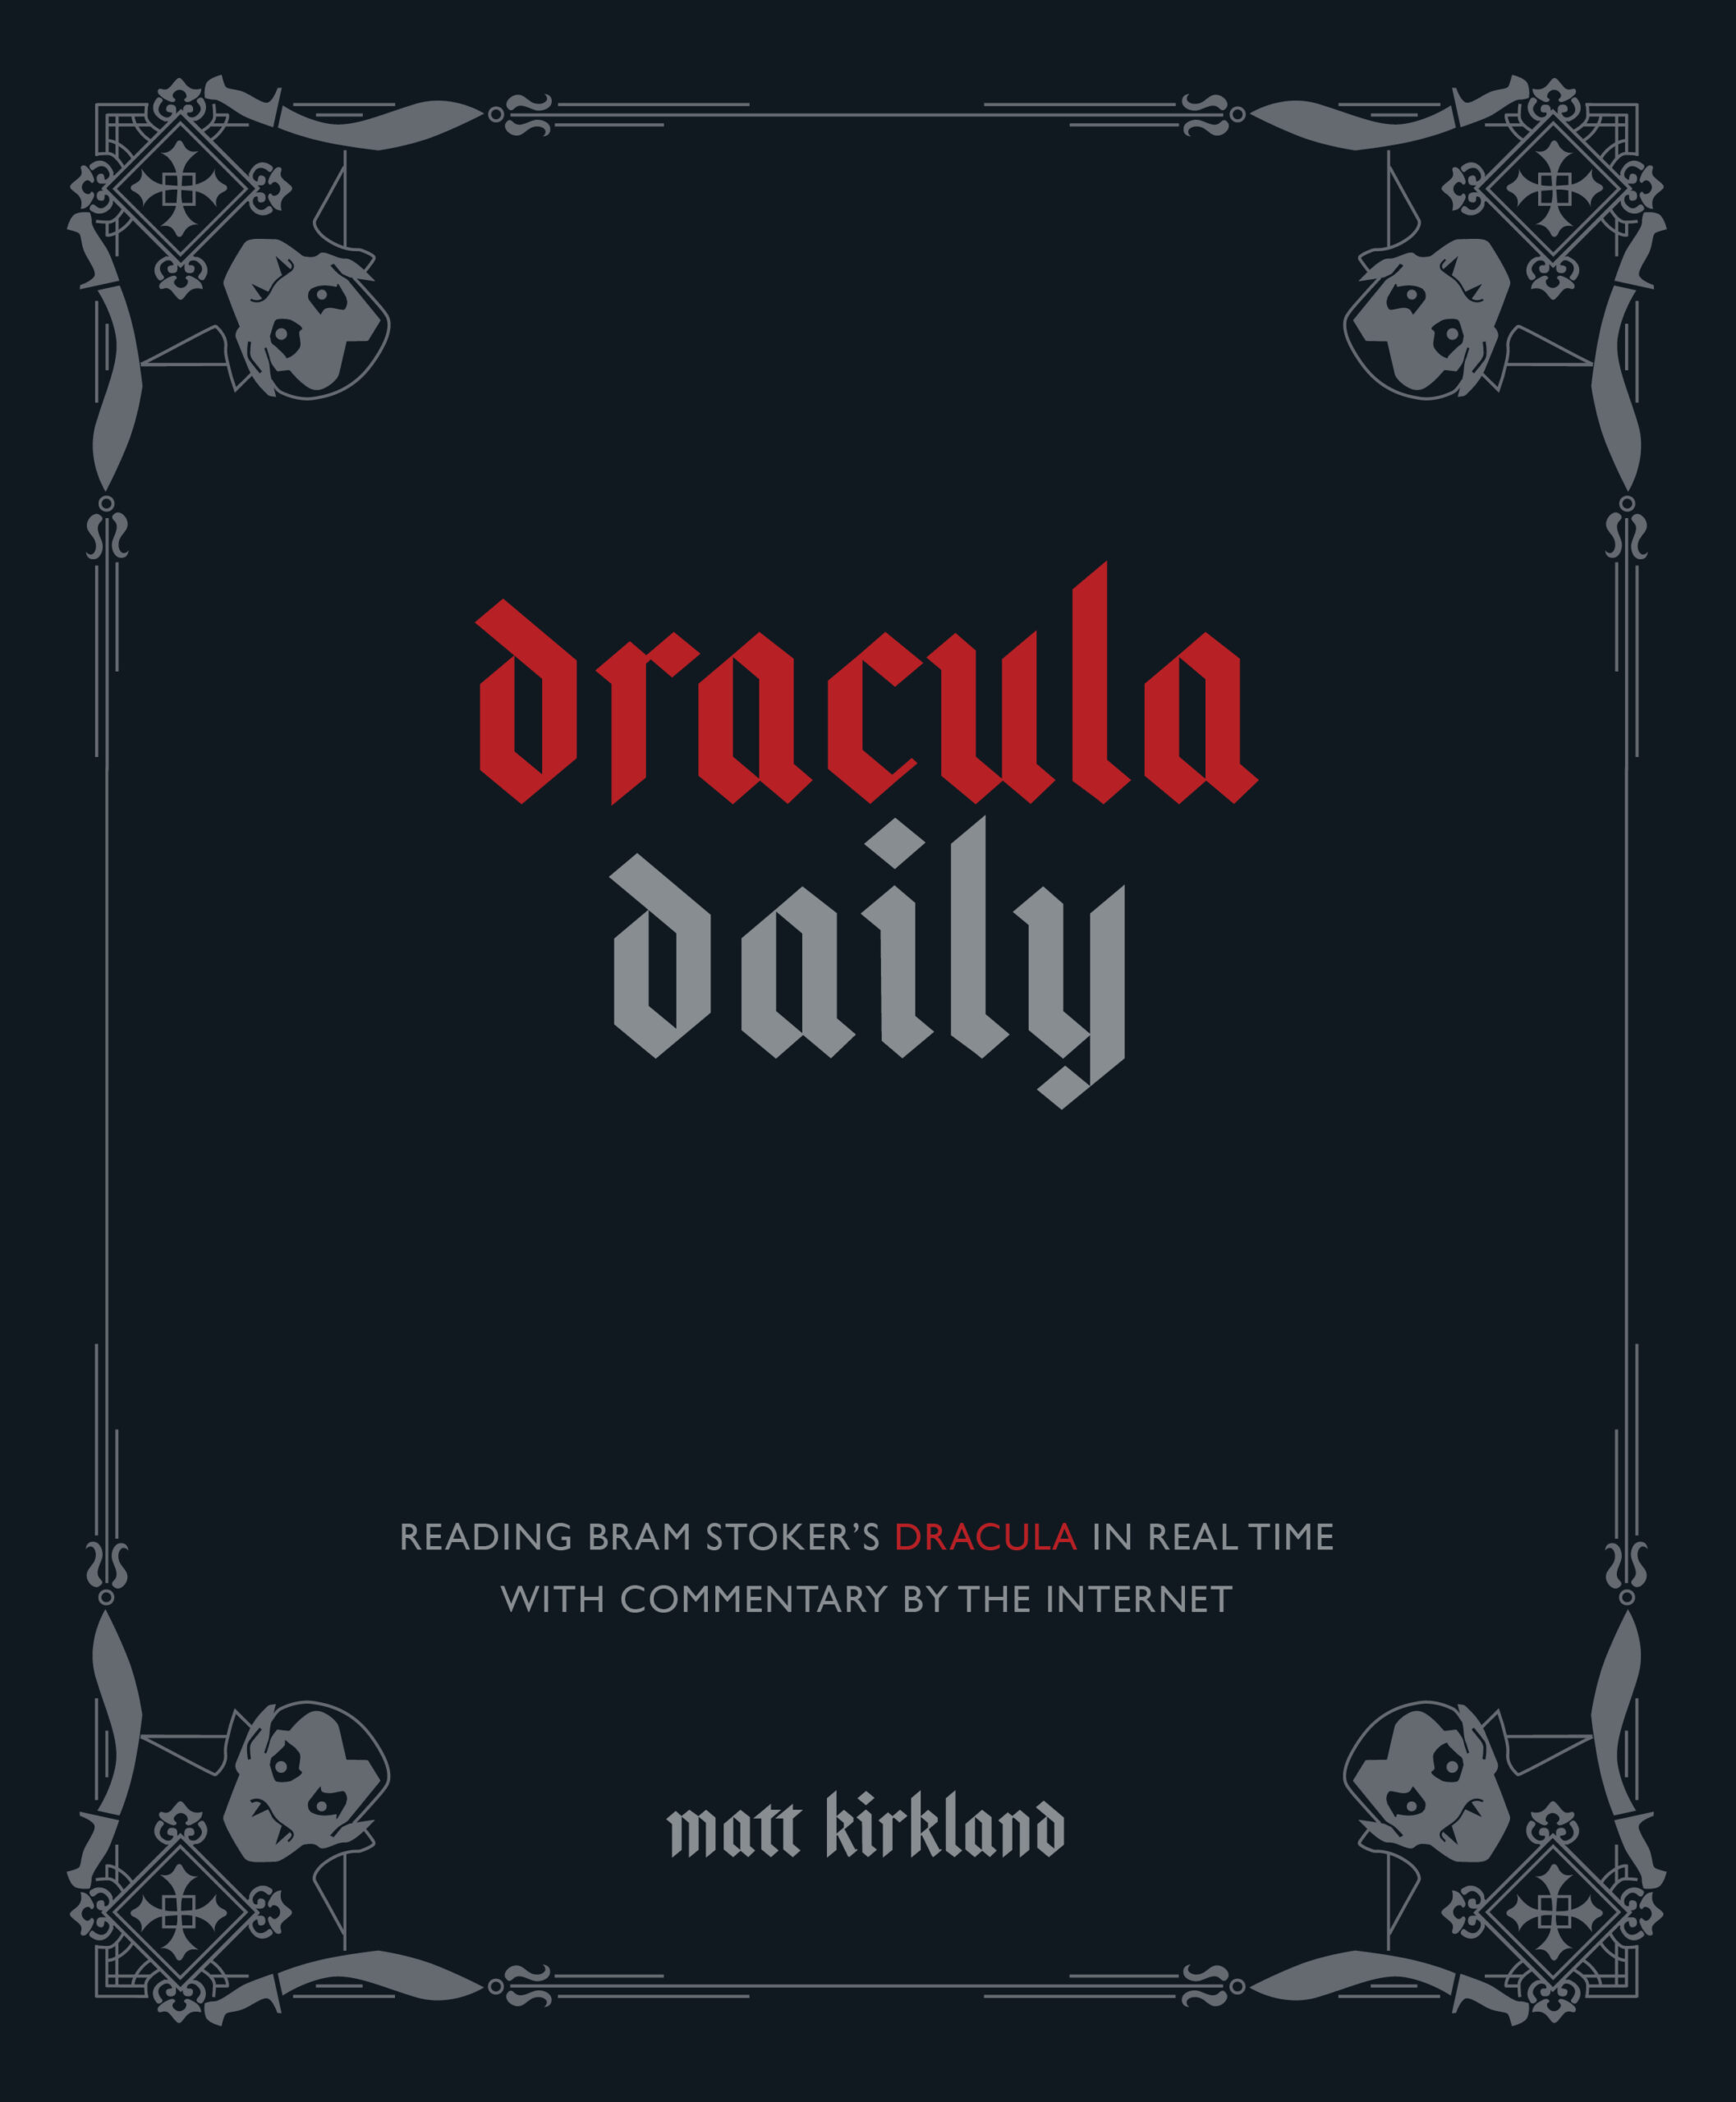 Book Talk: Dracula Daily by Matt Kirkland